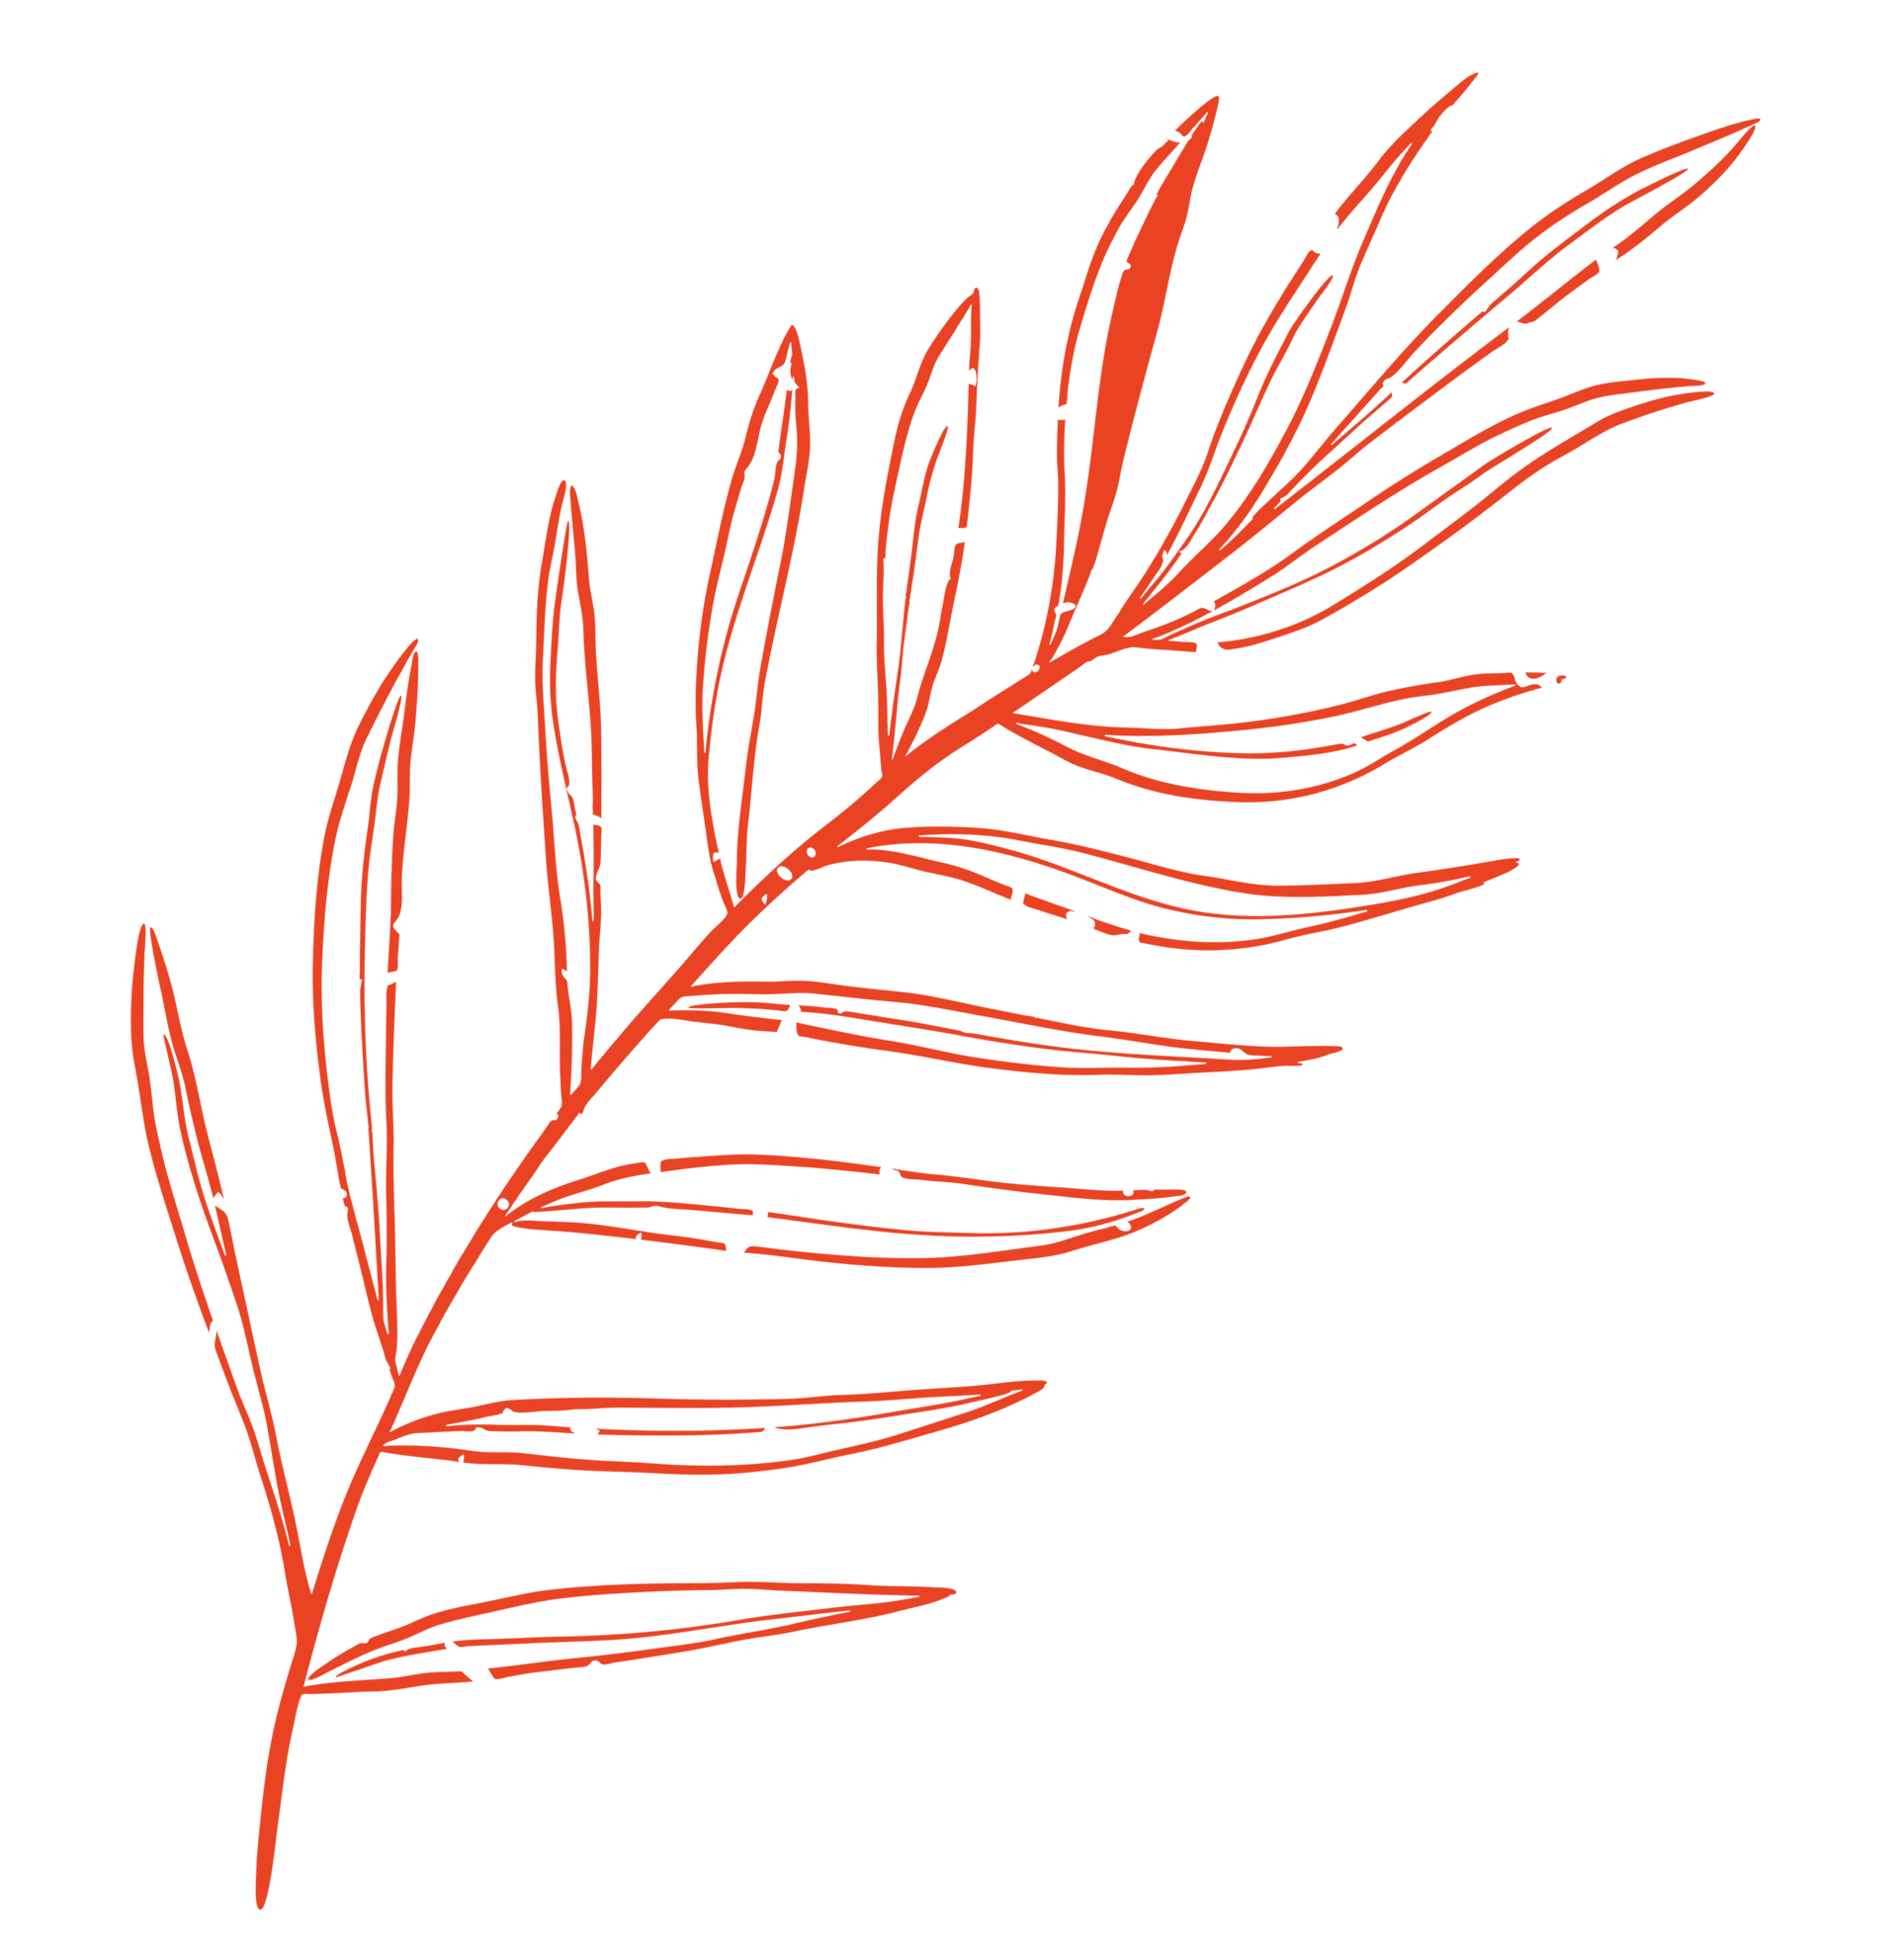 orange leaf icon